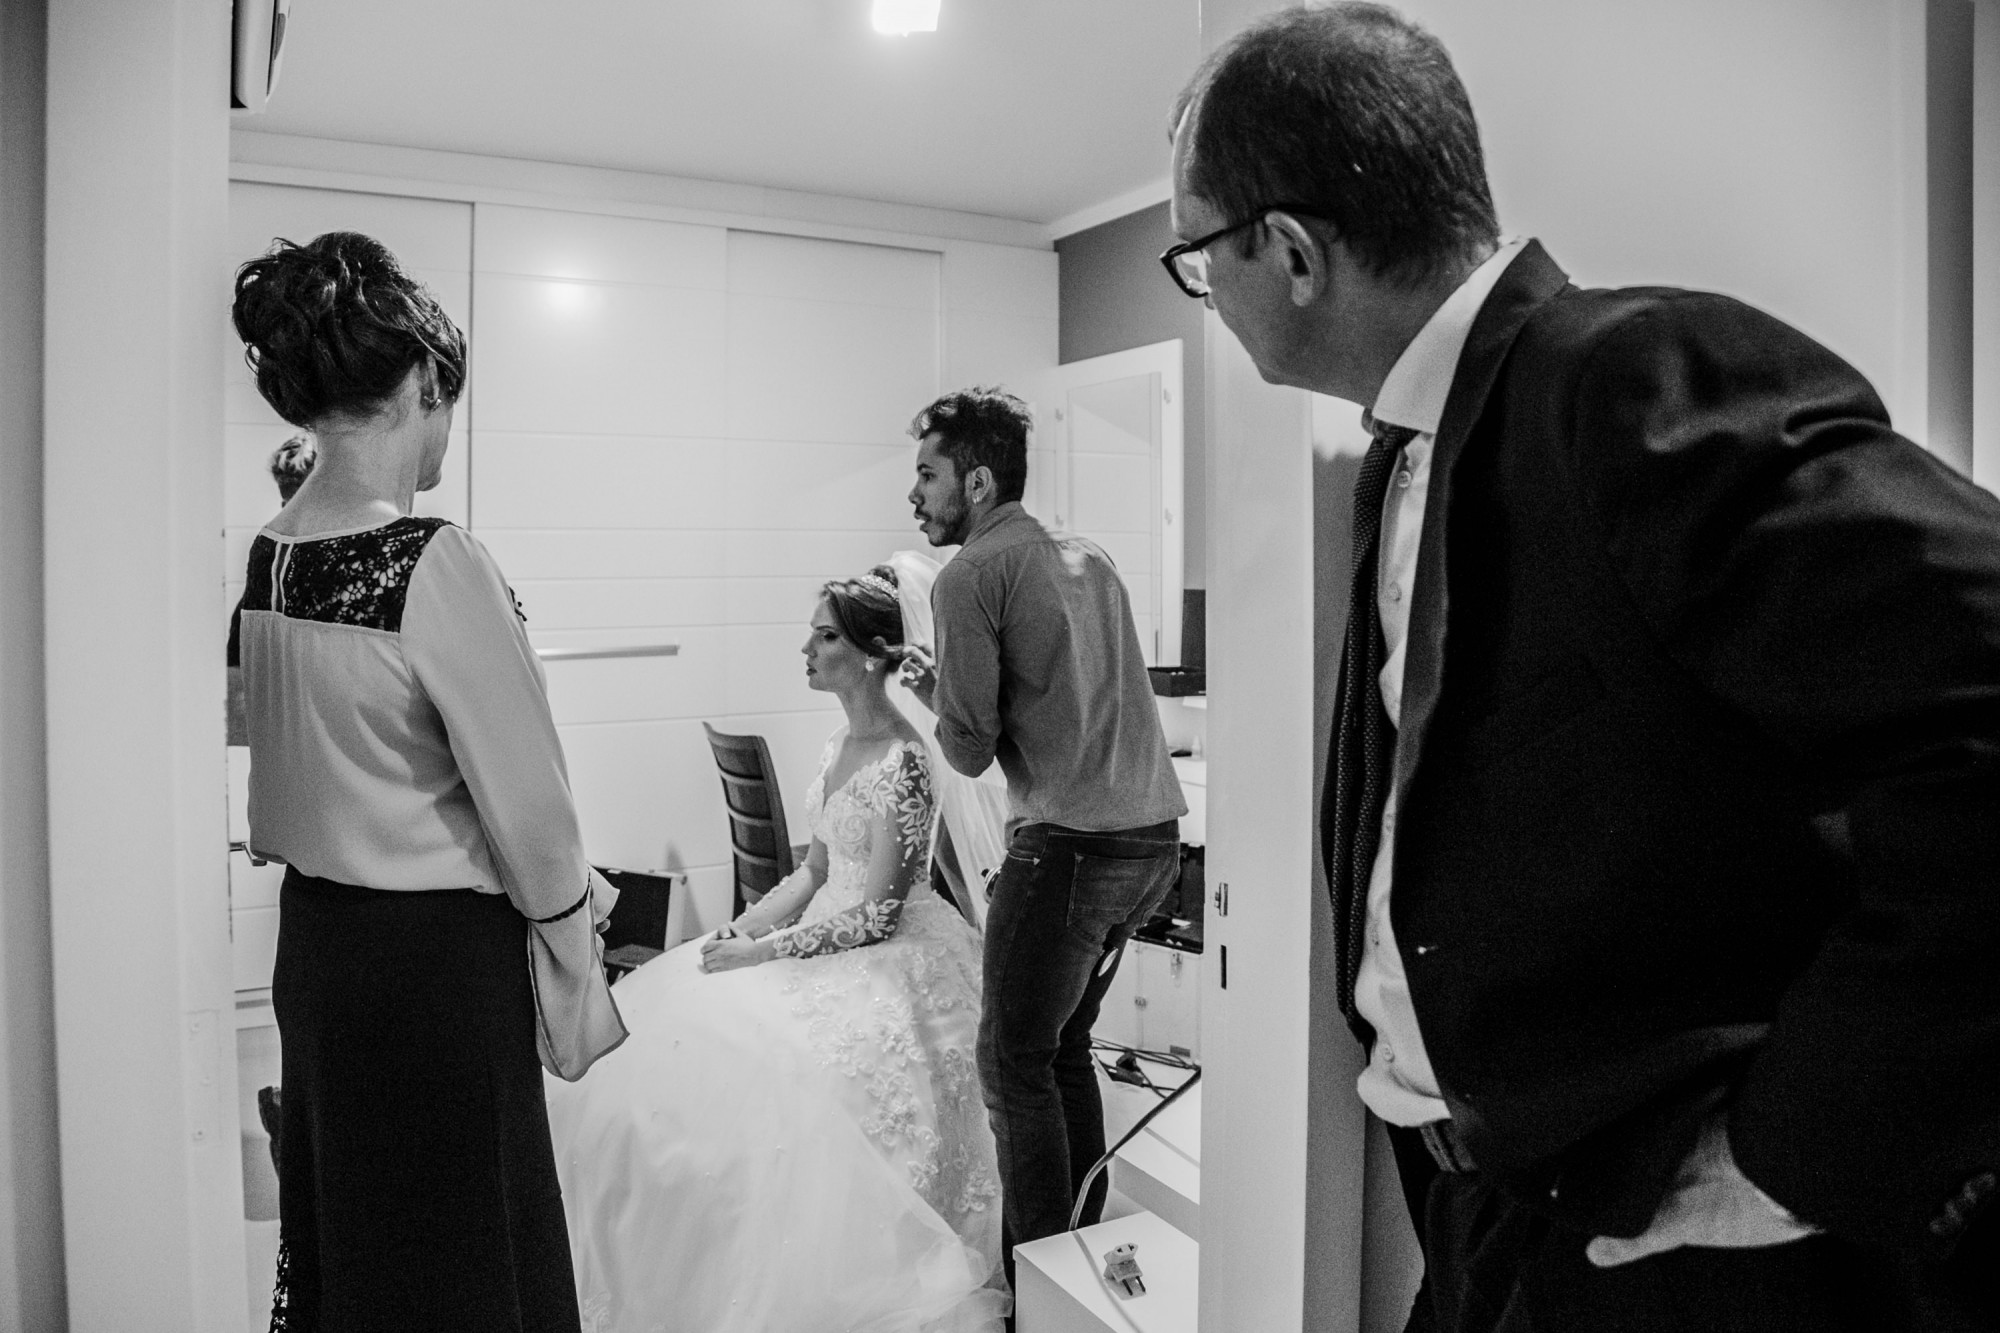 Casamento Anderson e Juliana Fioreli em Iporã Paraná - por Lorran Souza e Léia Sotile - Fotografos de casamentos - JA-572